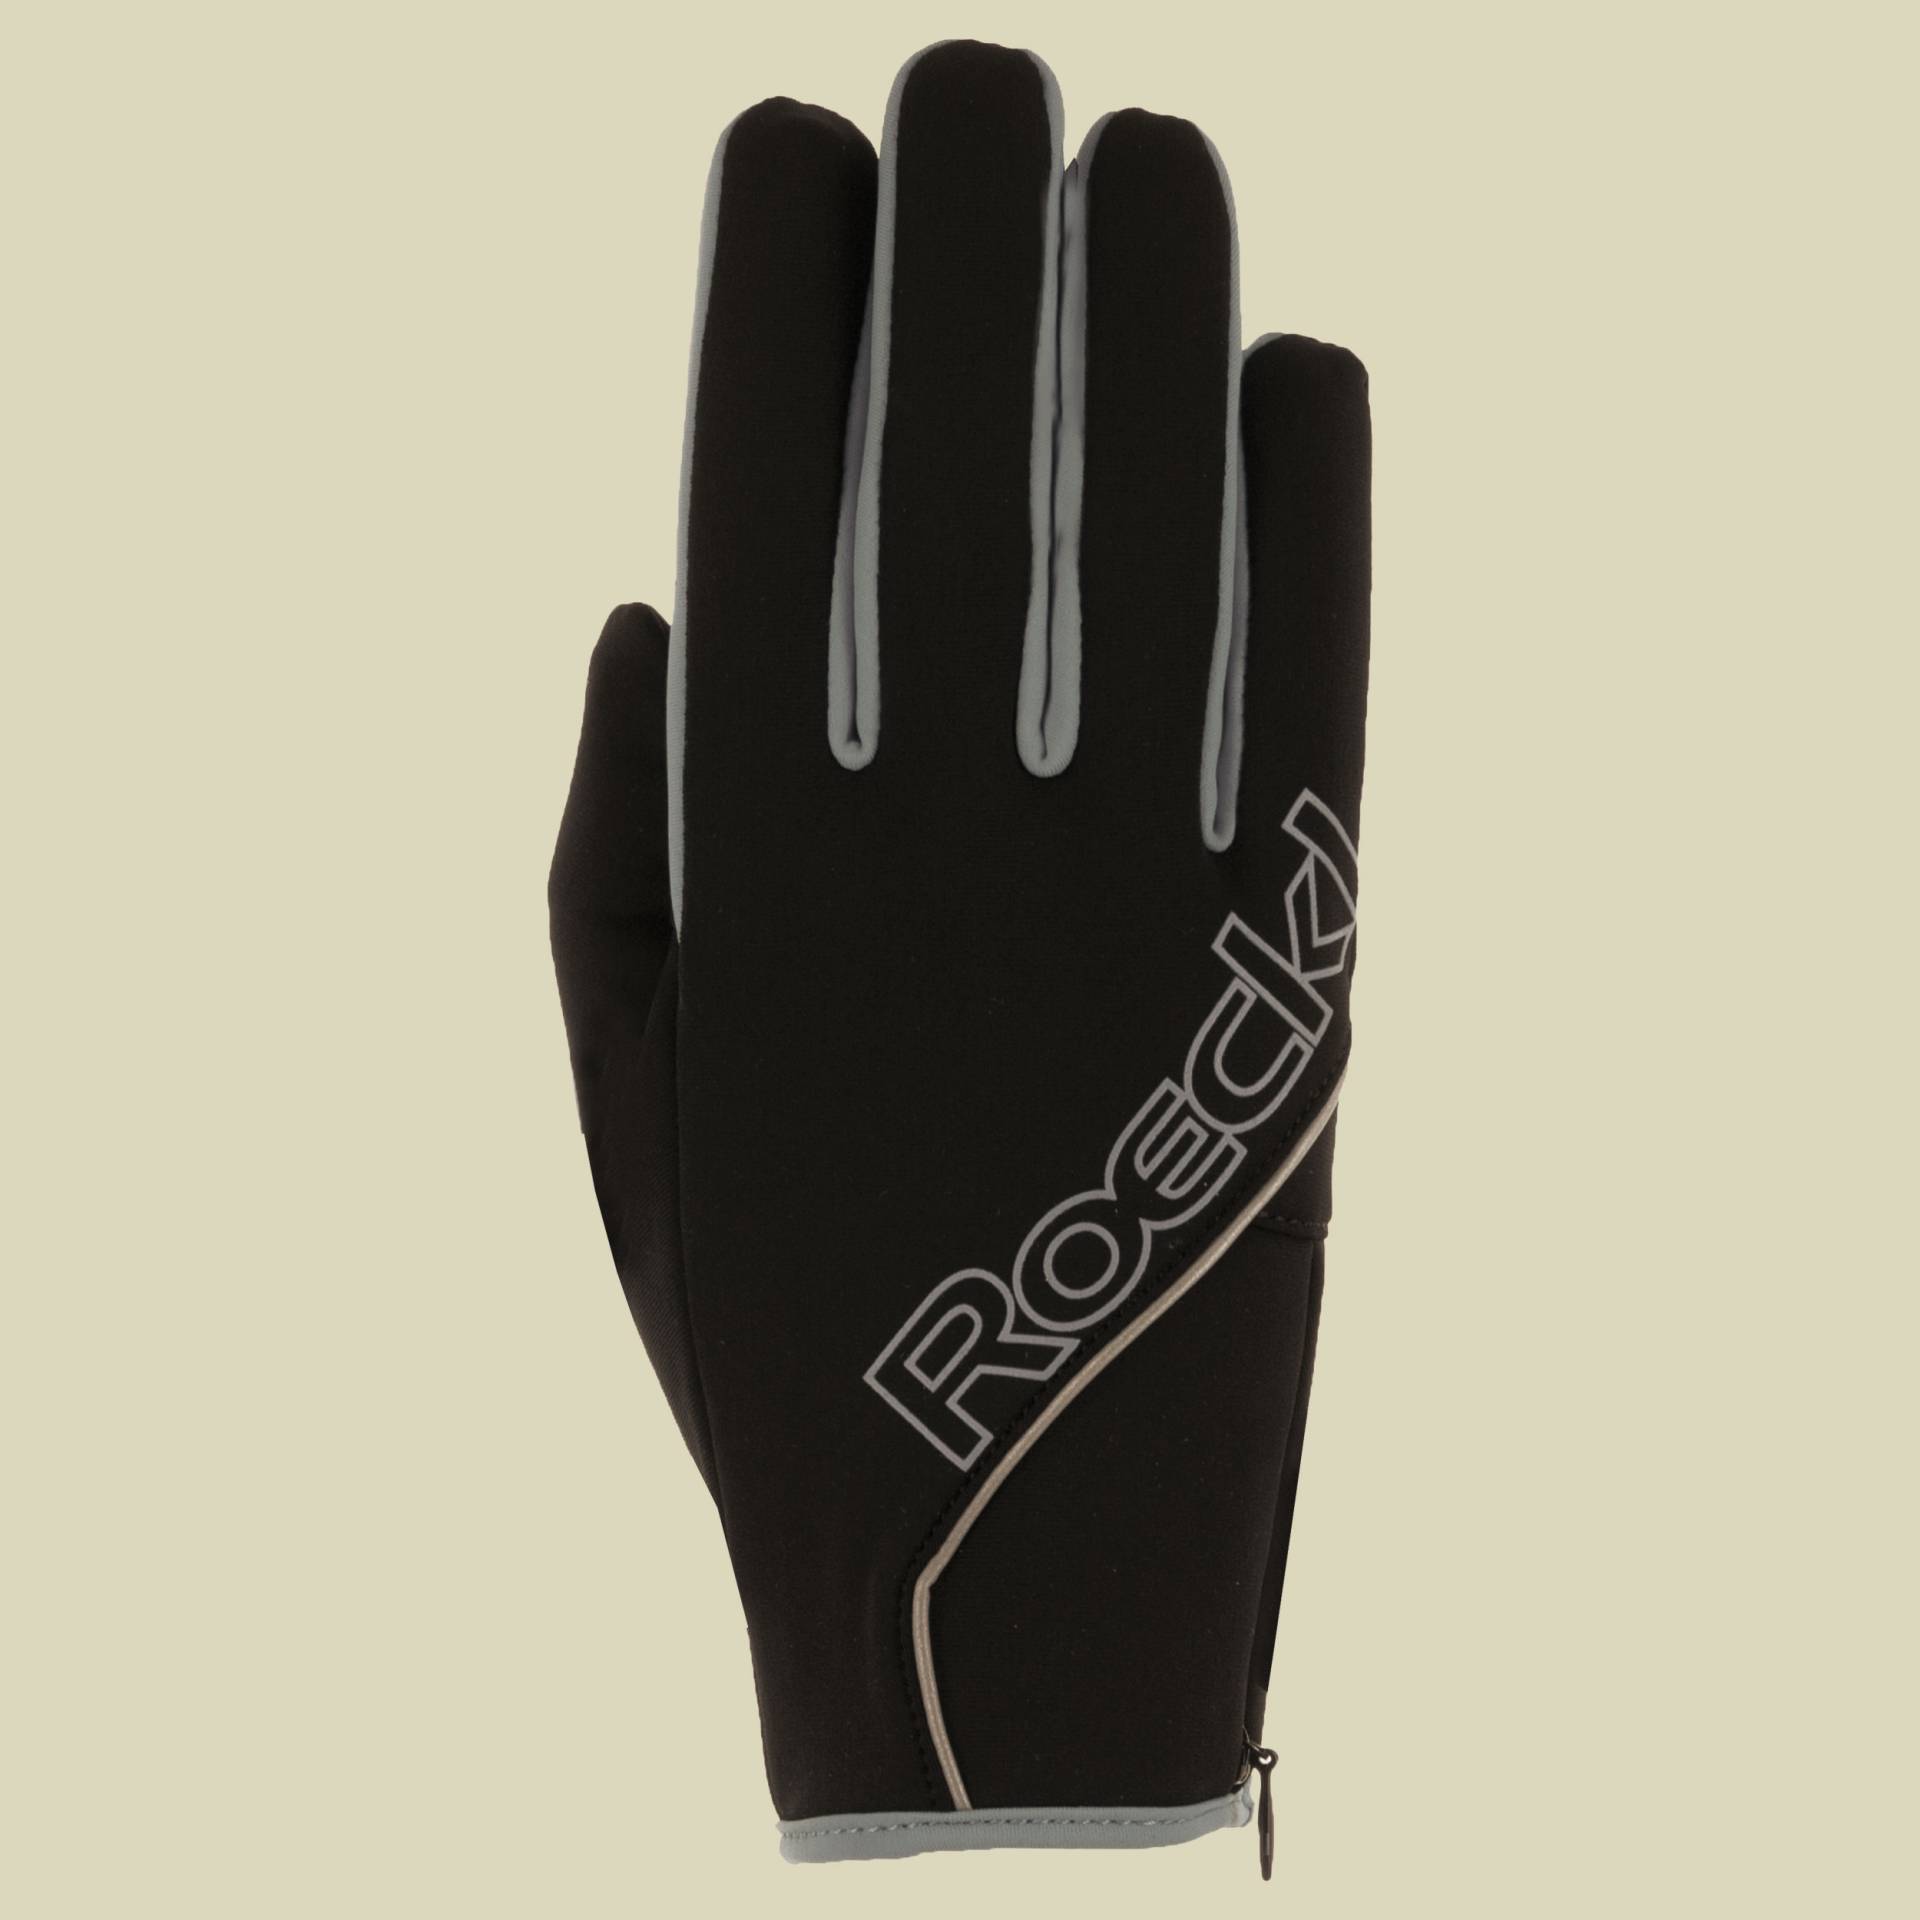 Jussy Größe 11 Farbe schwarz/grau von Roeckl Sports